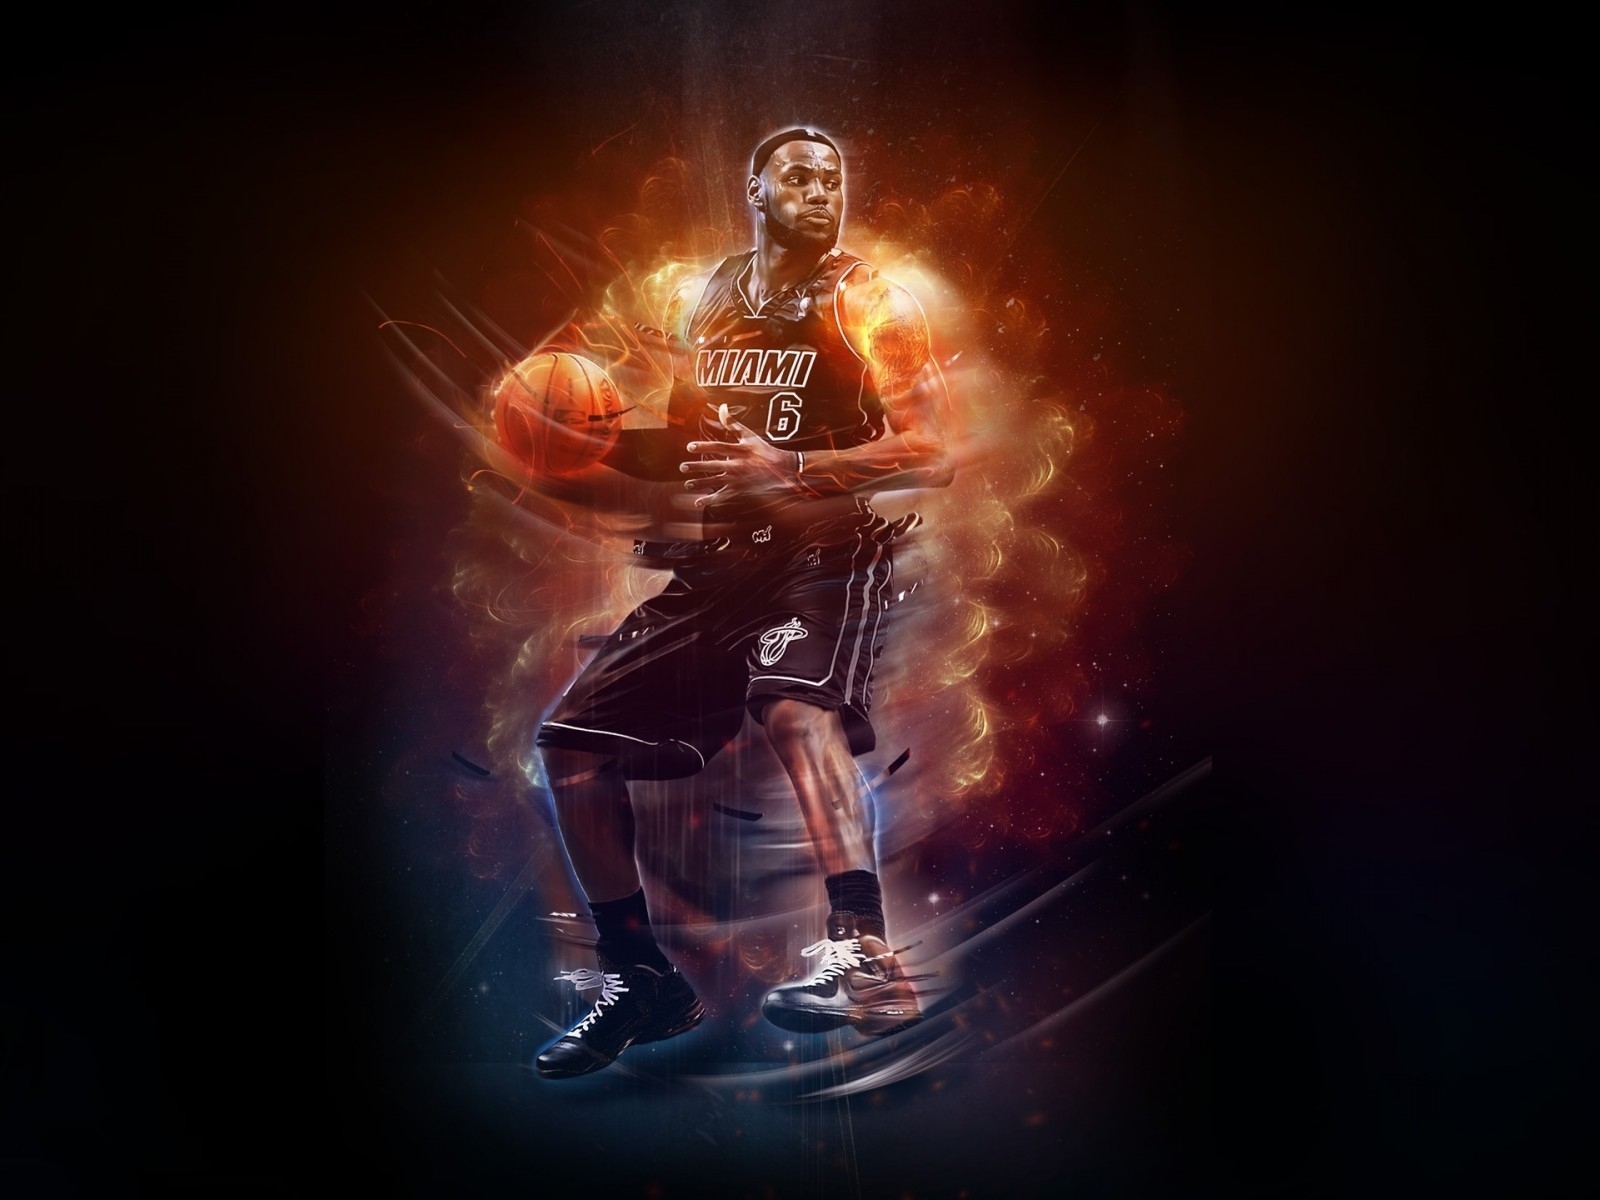 LeBron James NBA for 1600 x 1200 resolution